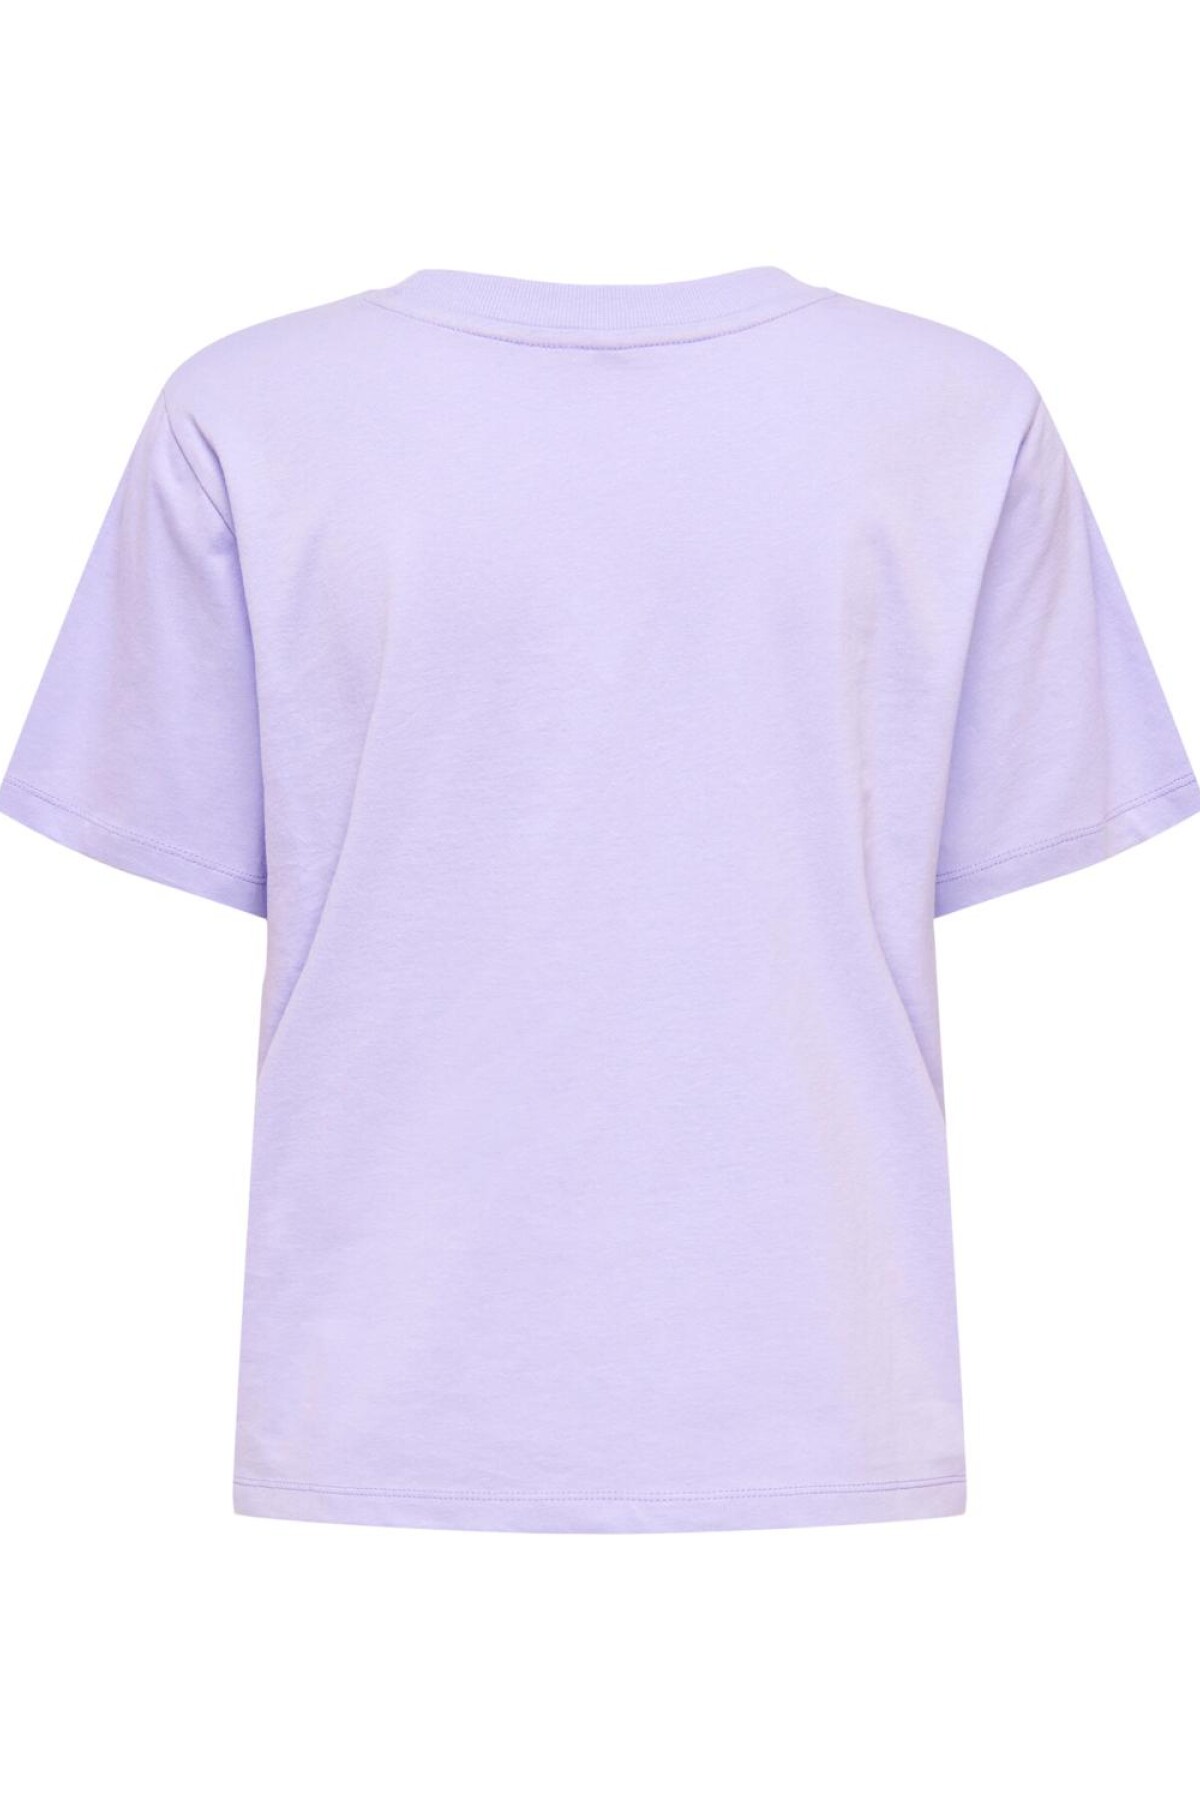 Camiseta Vera Lavender